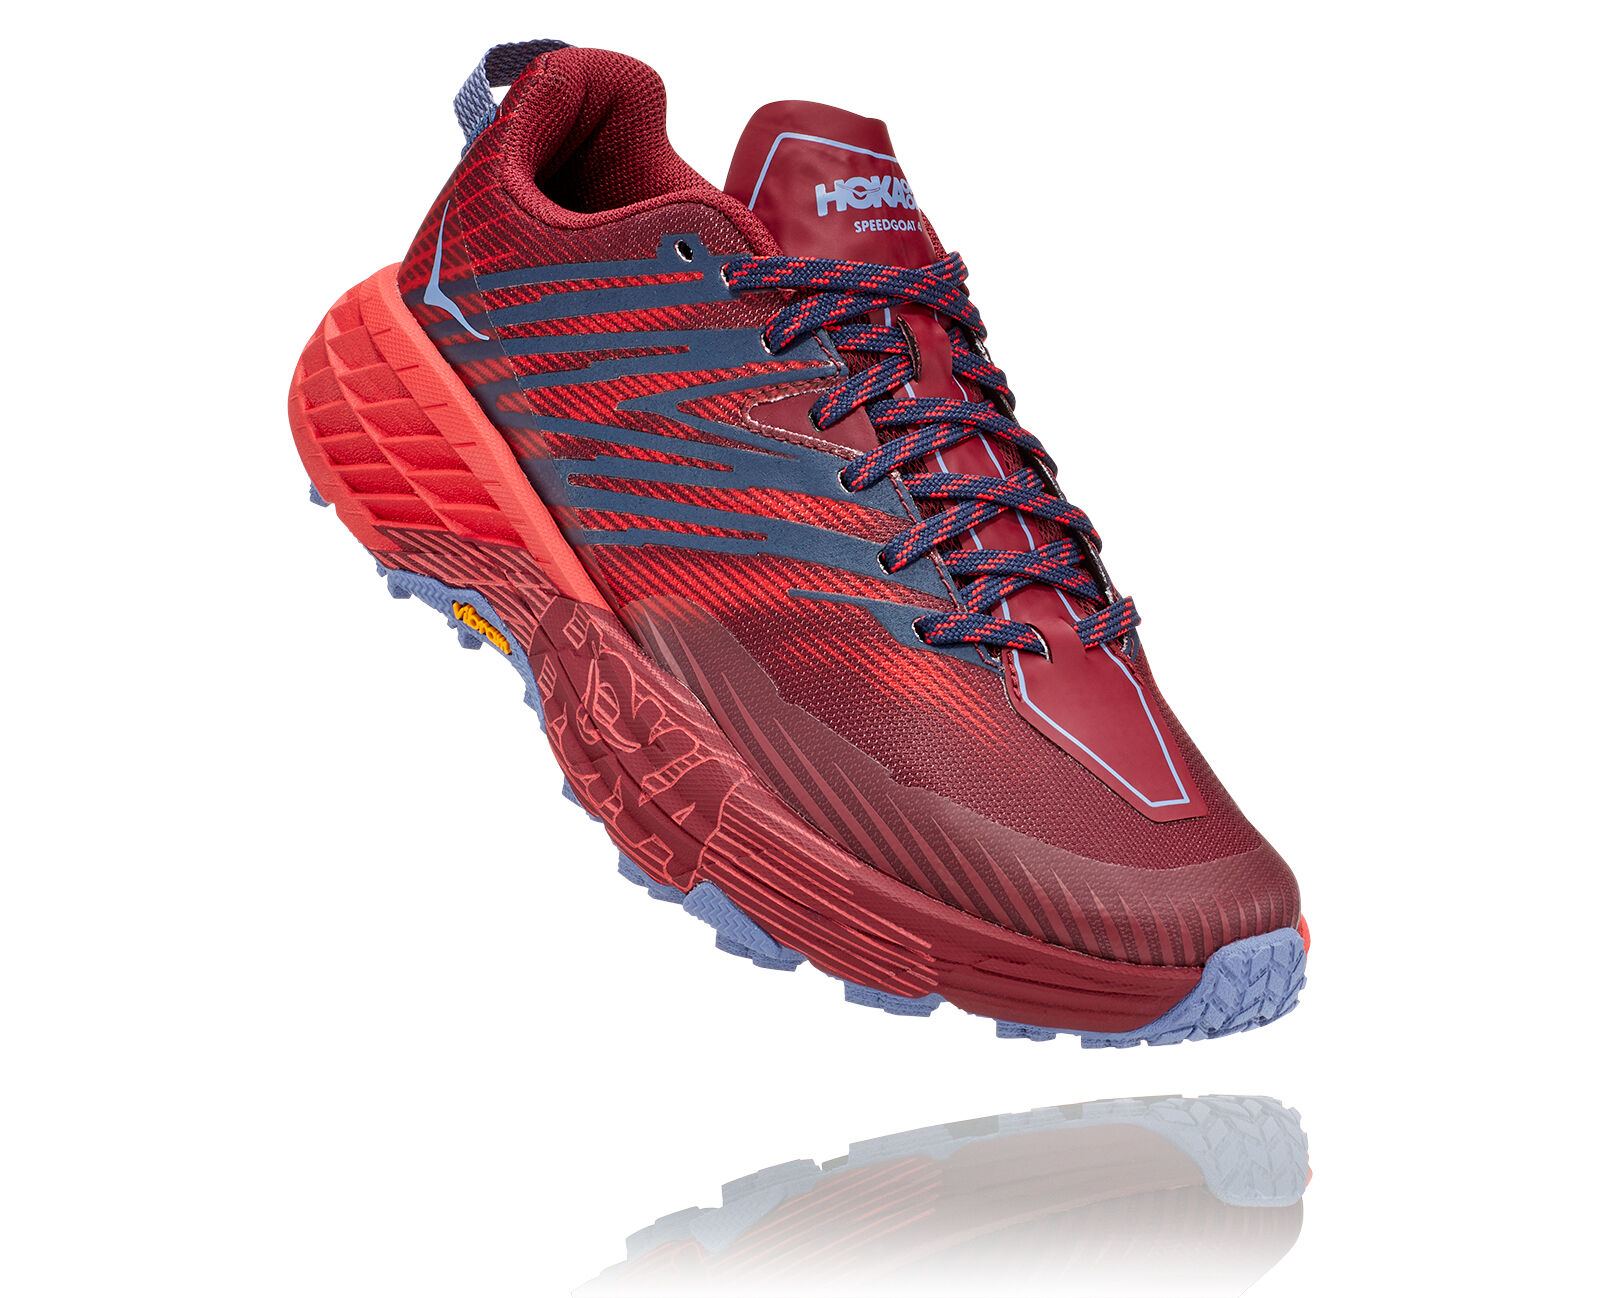 Hoka Speedgoat 4 - Trail Running shoes - Women's